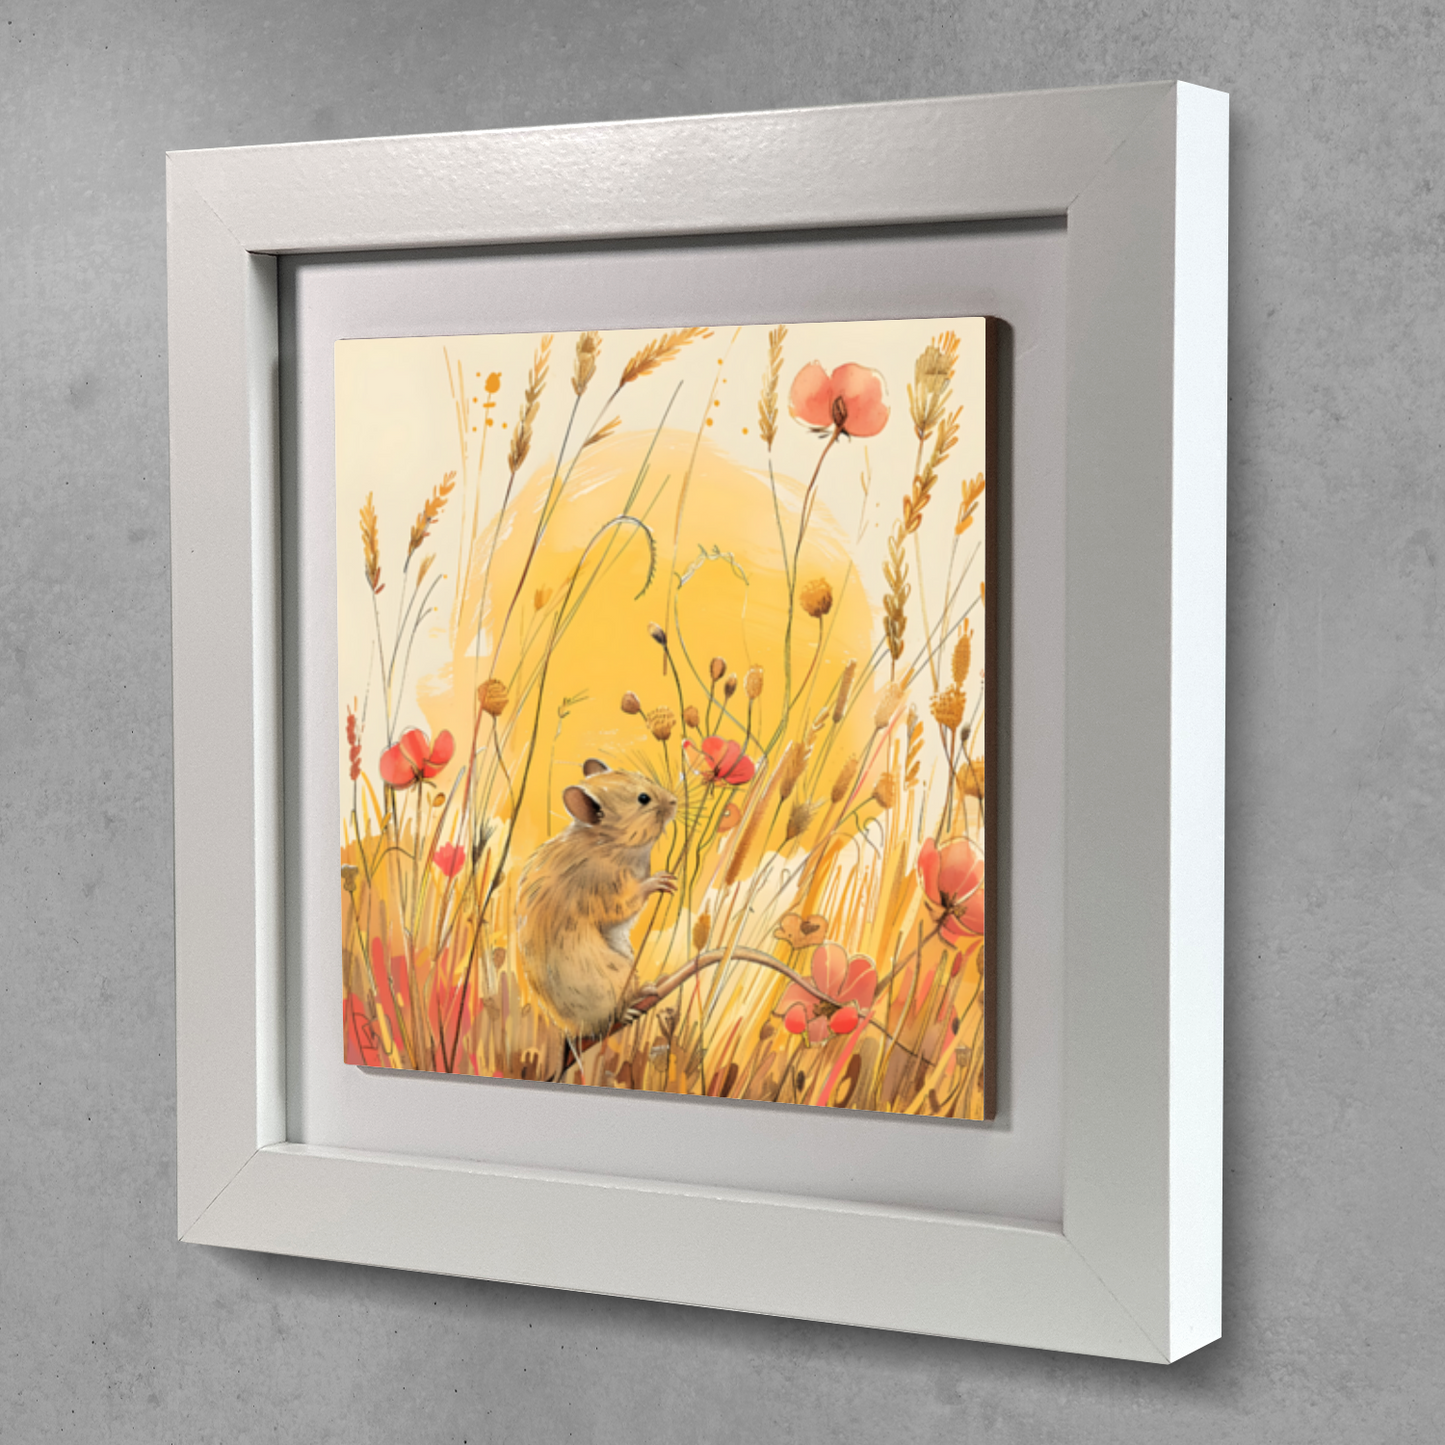 Meadow Mouse Framed Ceramic Art Tile